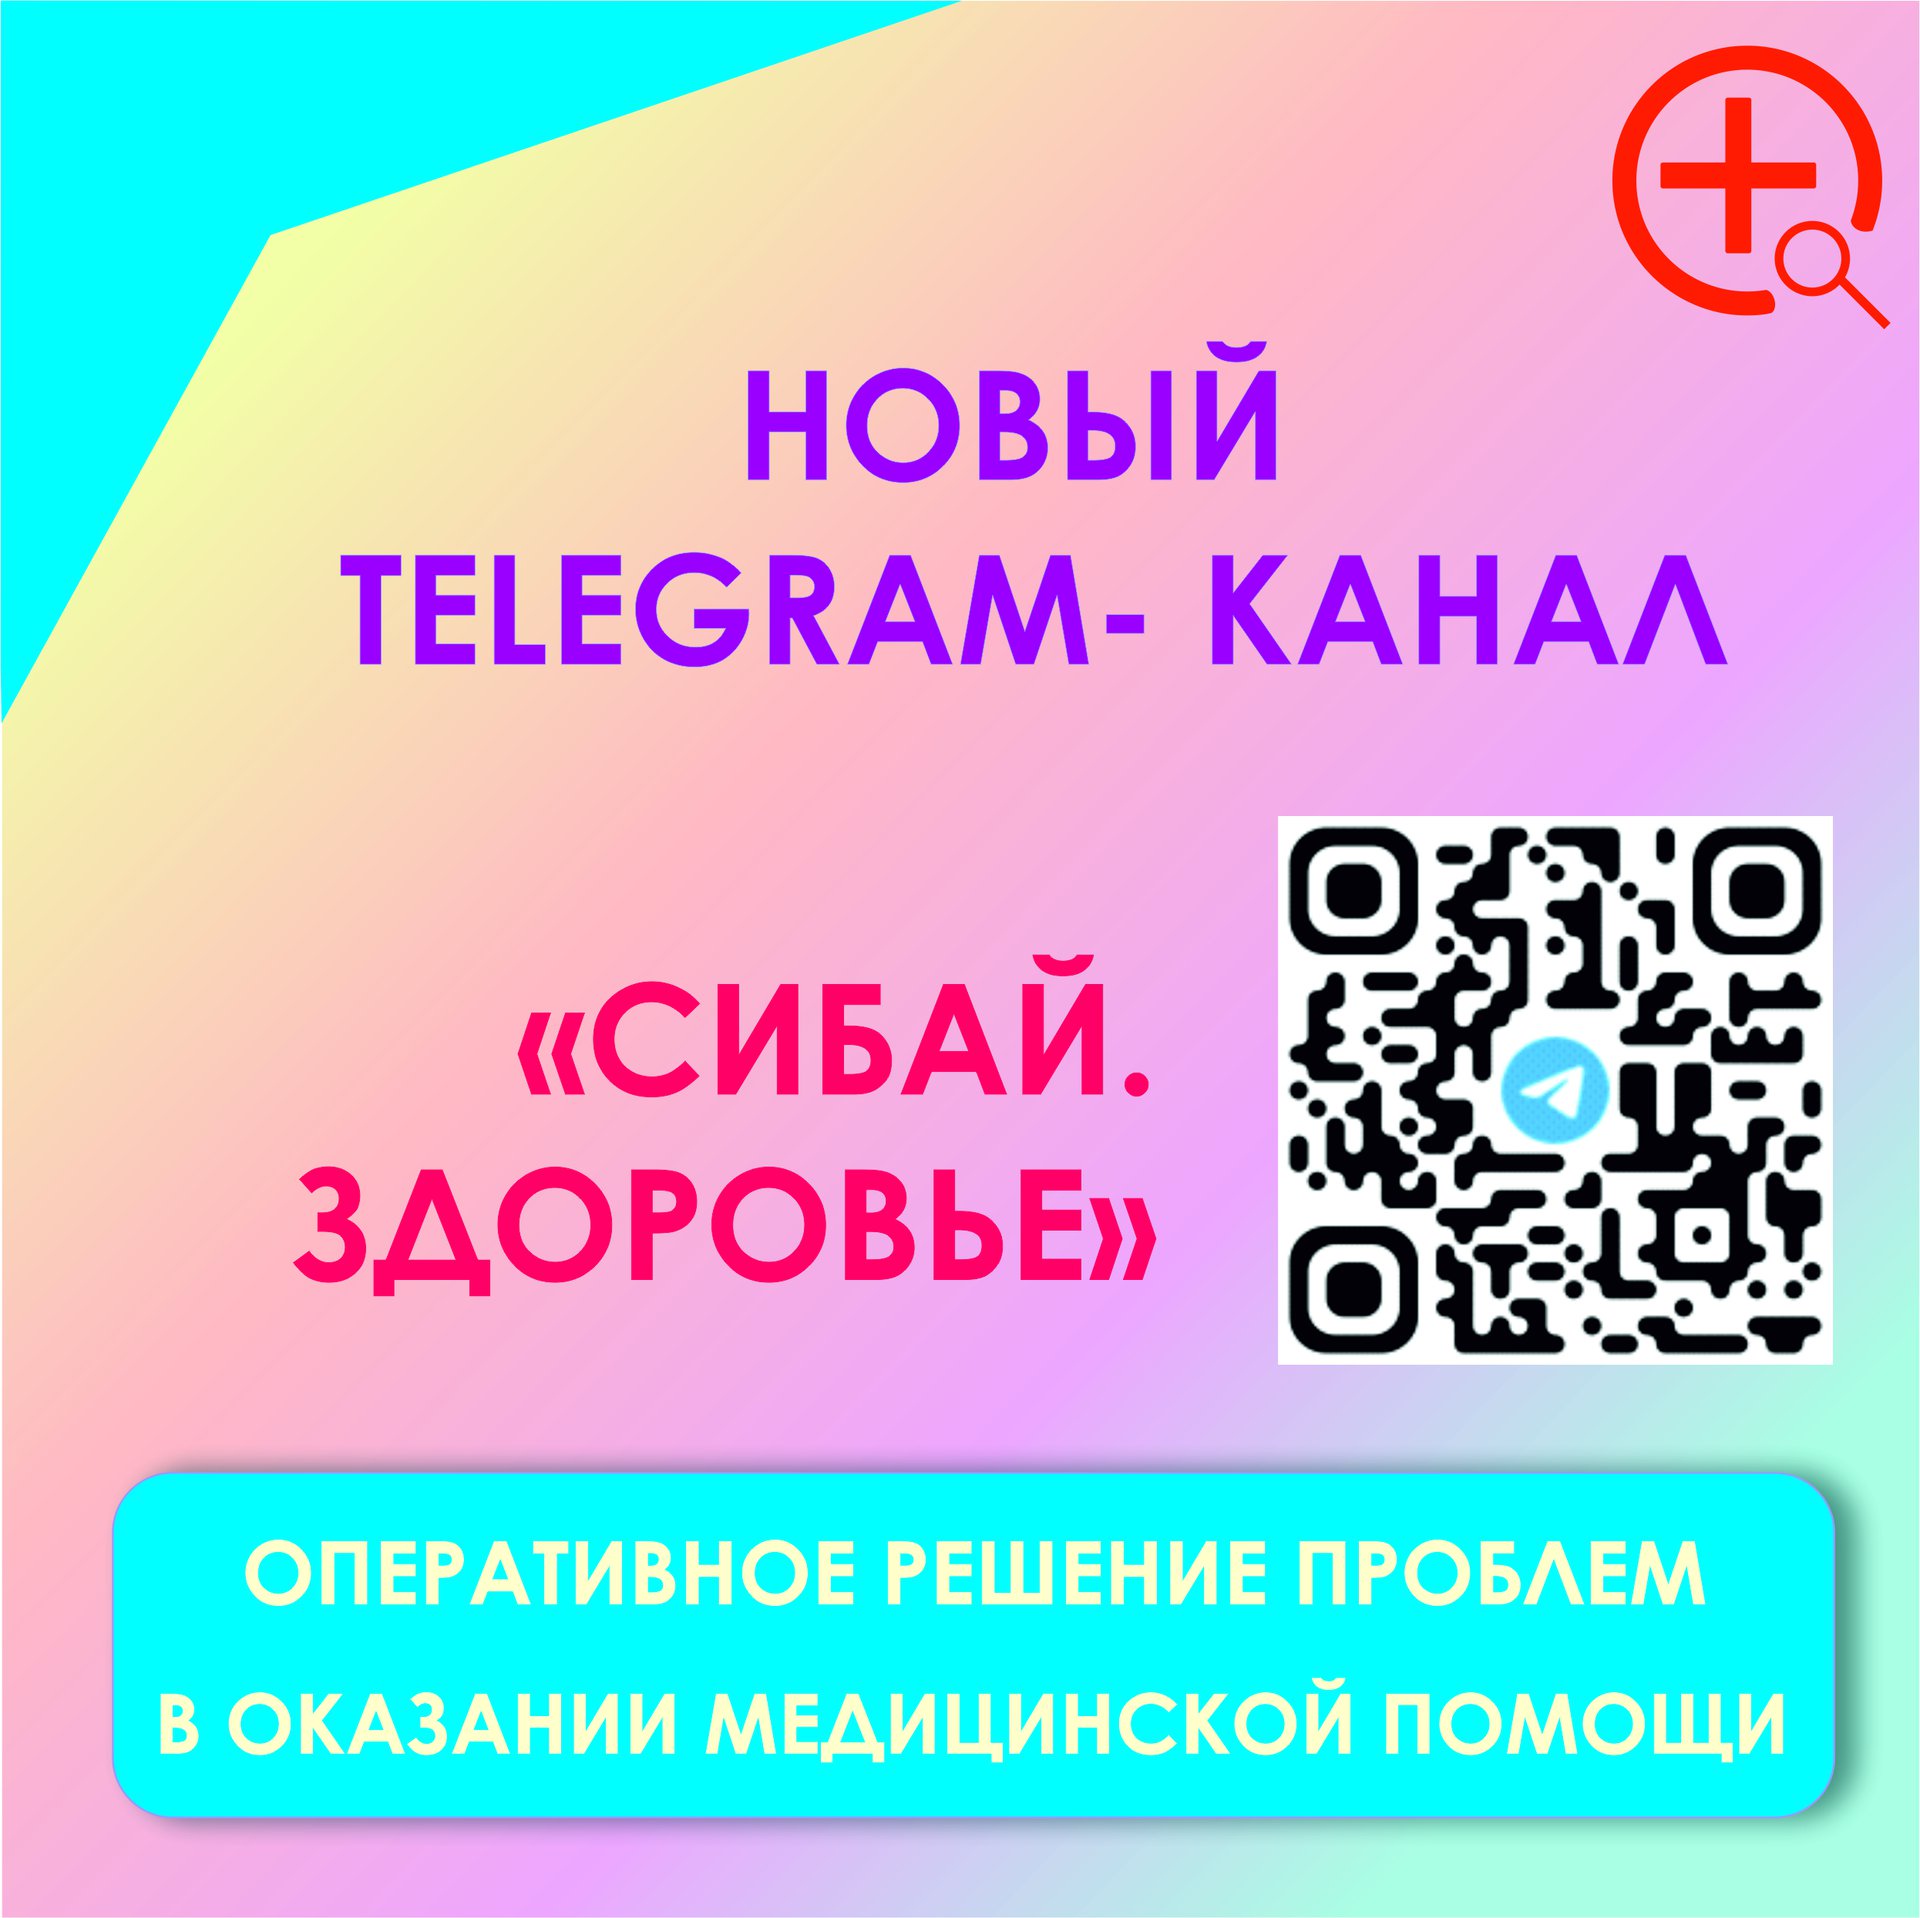 В Сибайском медицинском округе создан медицинский чат в мессенджере «Телеграм». 